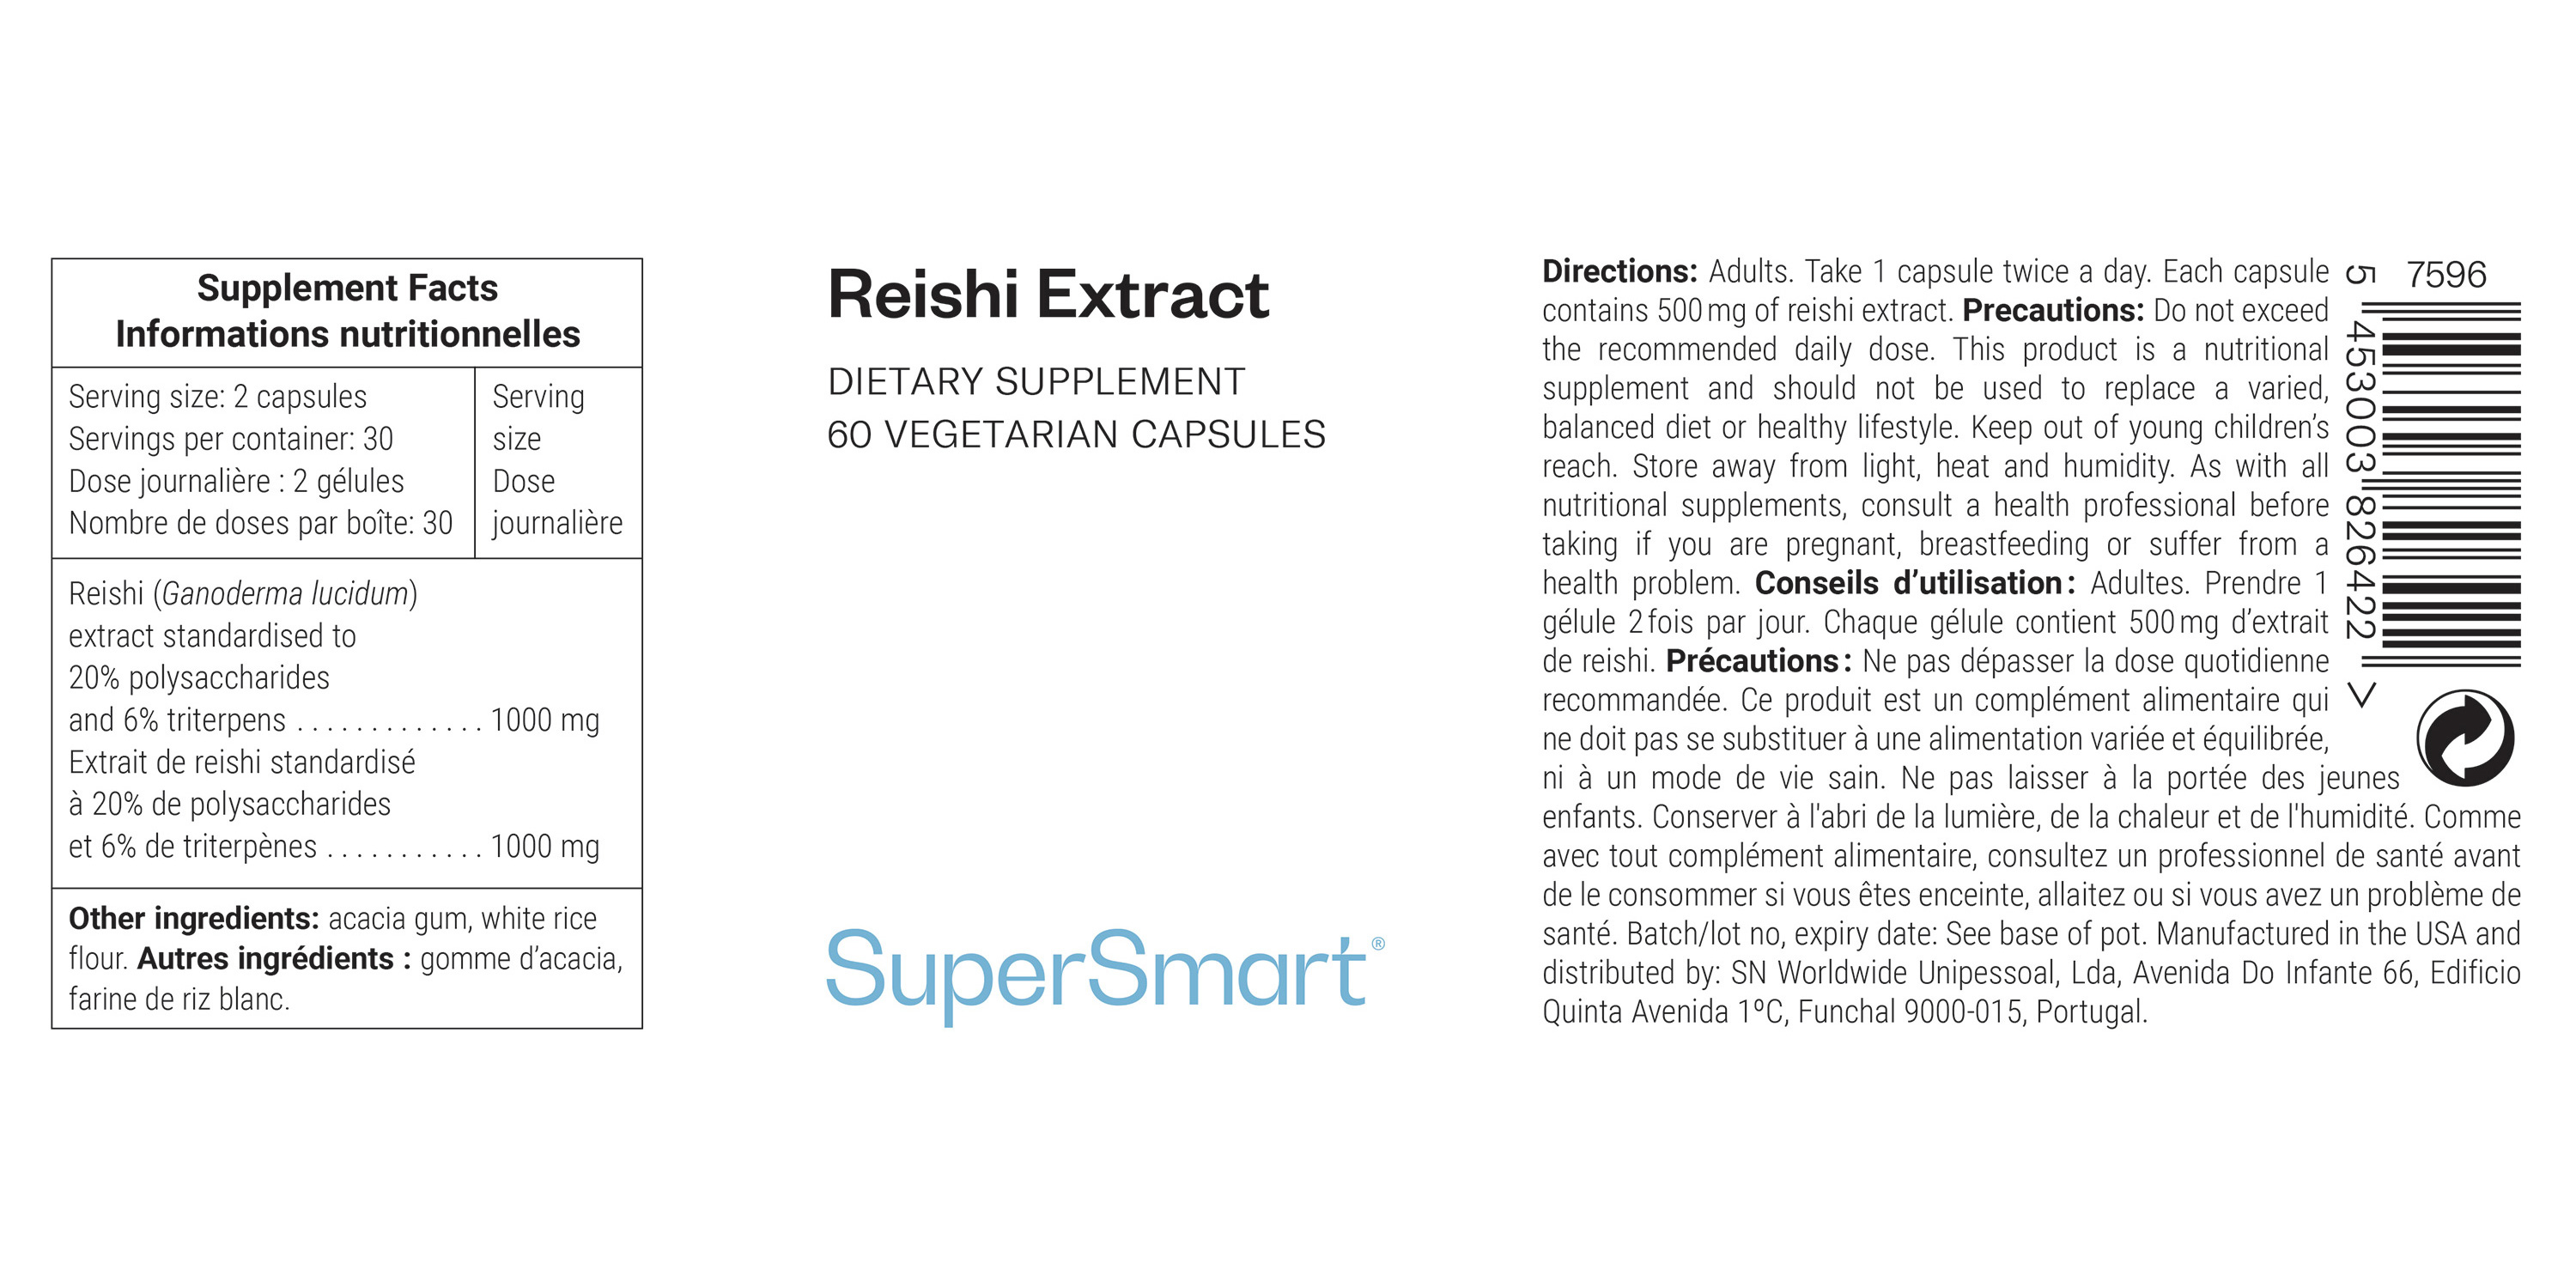 Reishi Extract